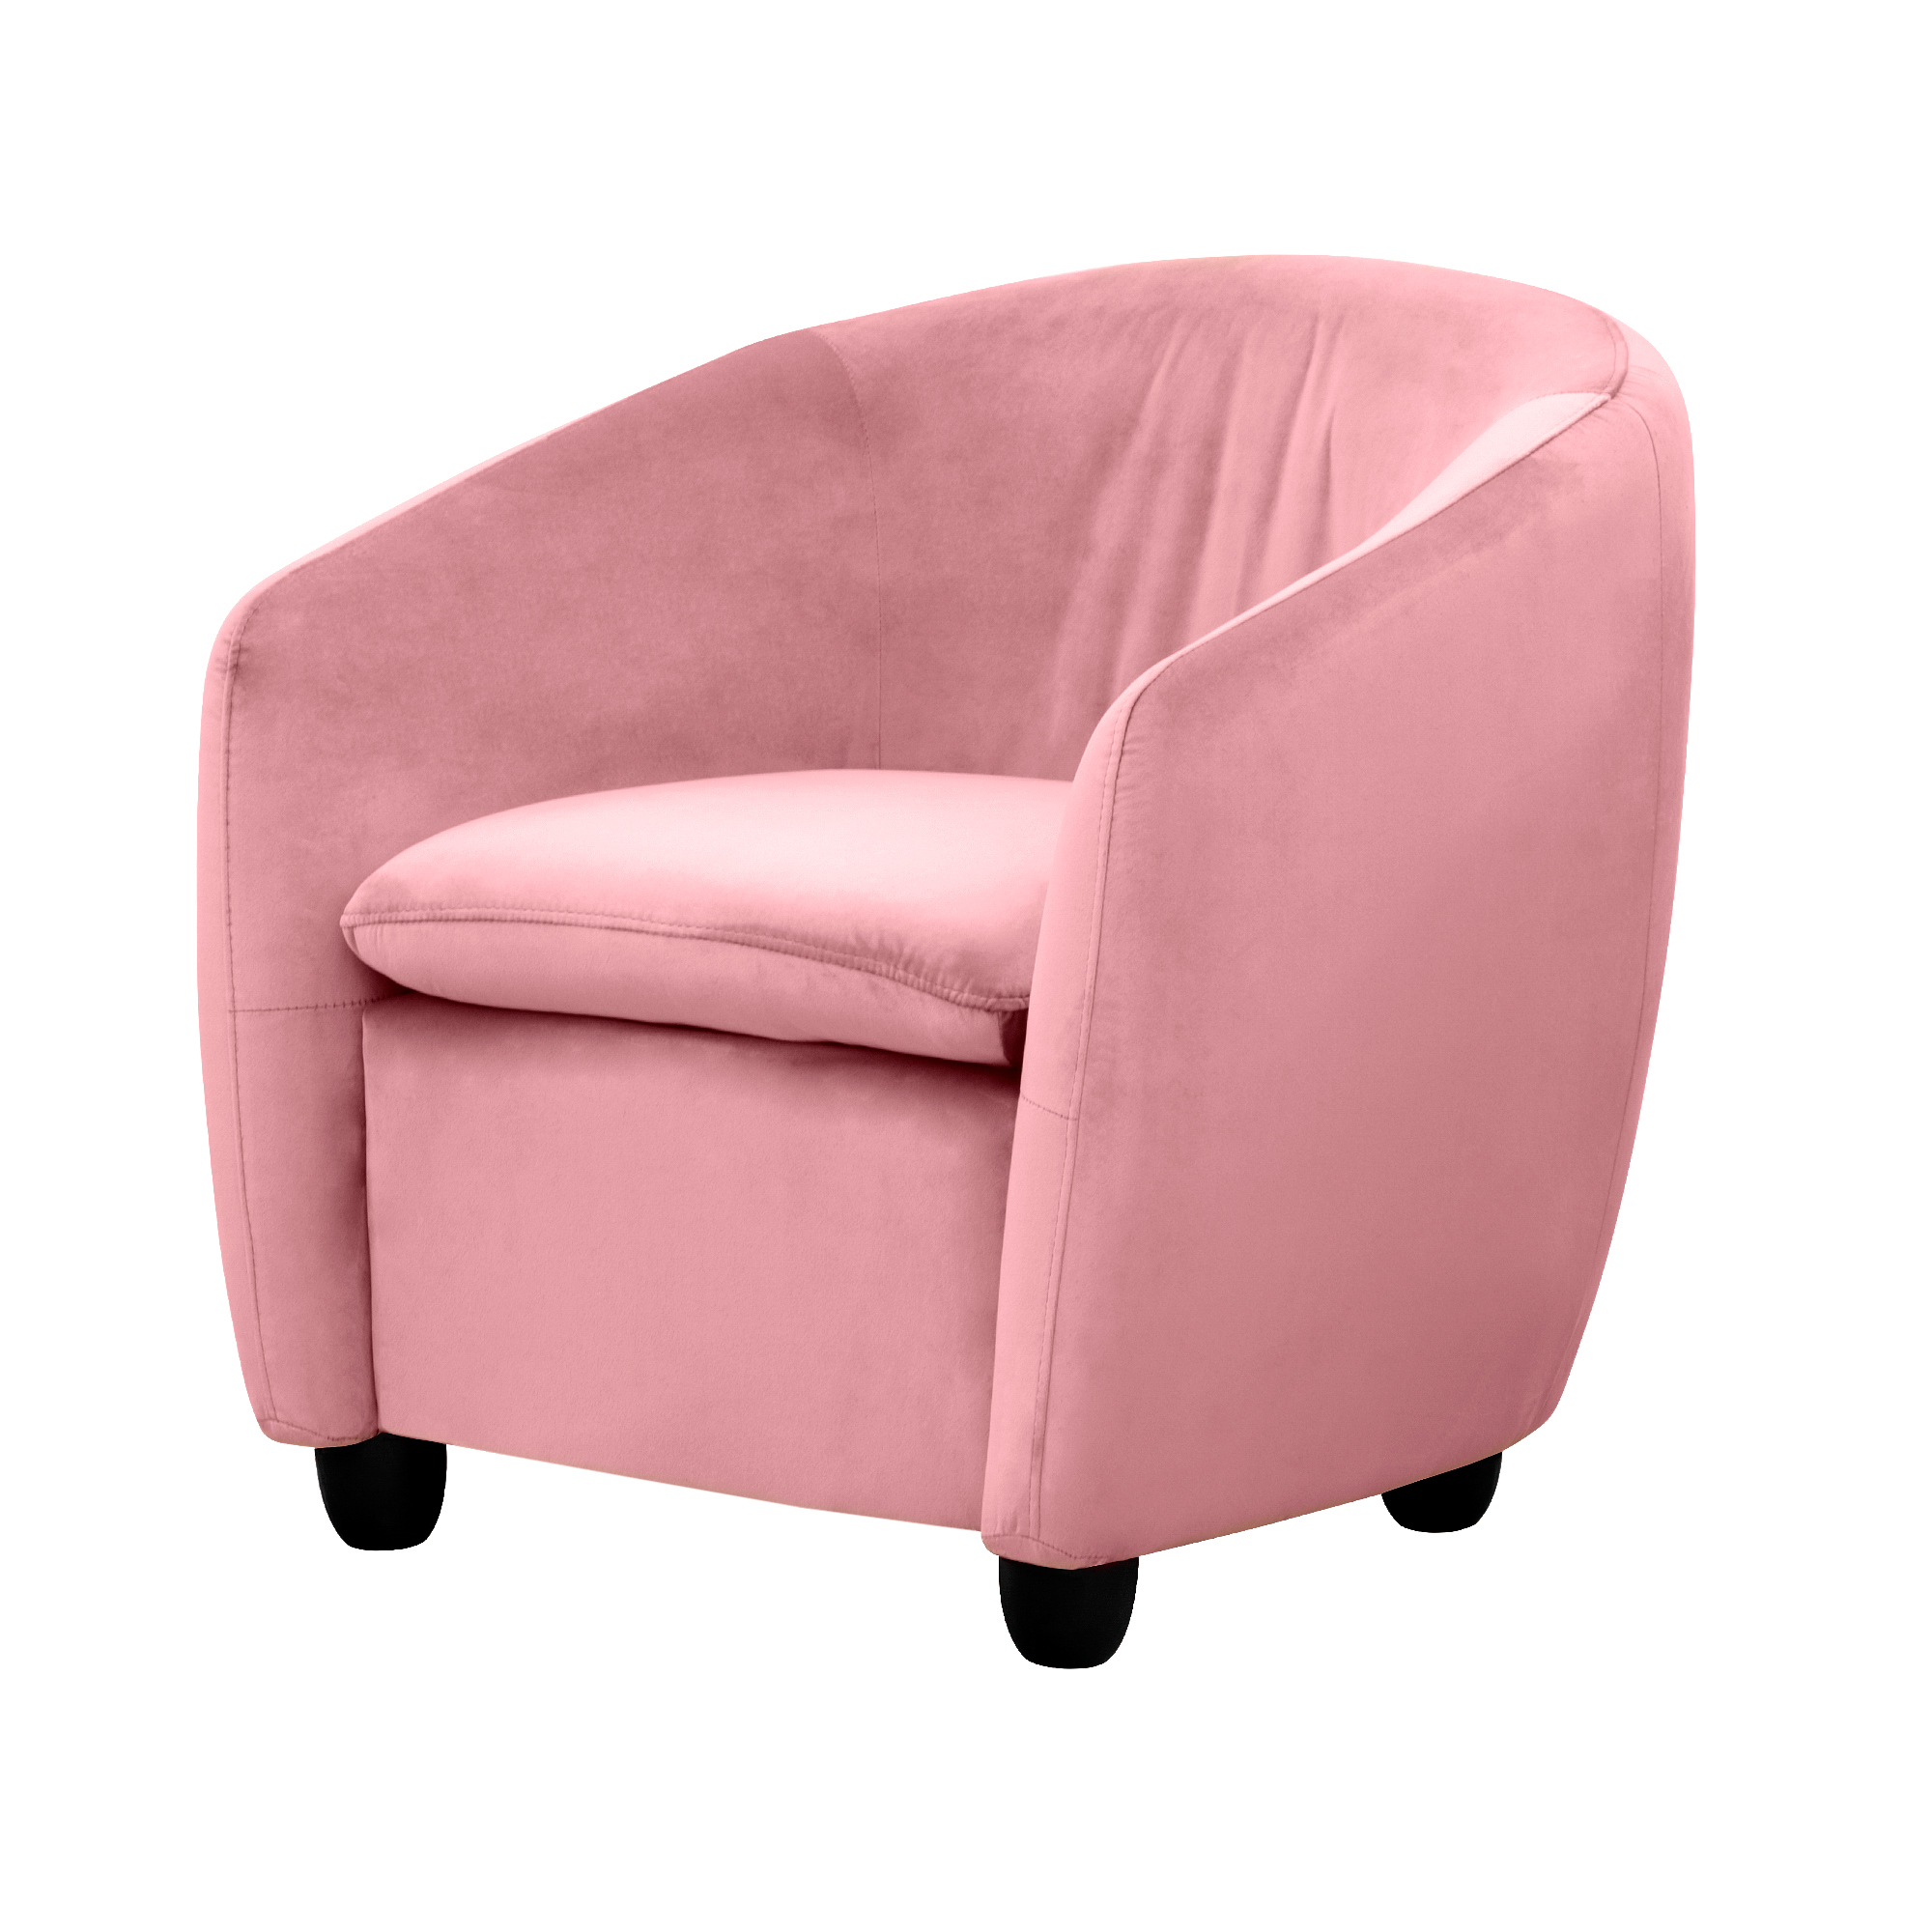 Кресло Liyasi Оливия розовое 72x67x66cm - фото 1